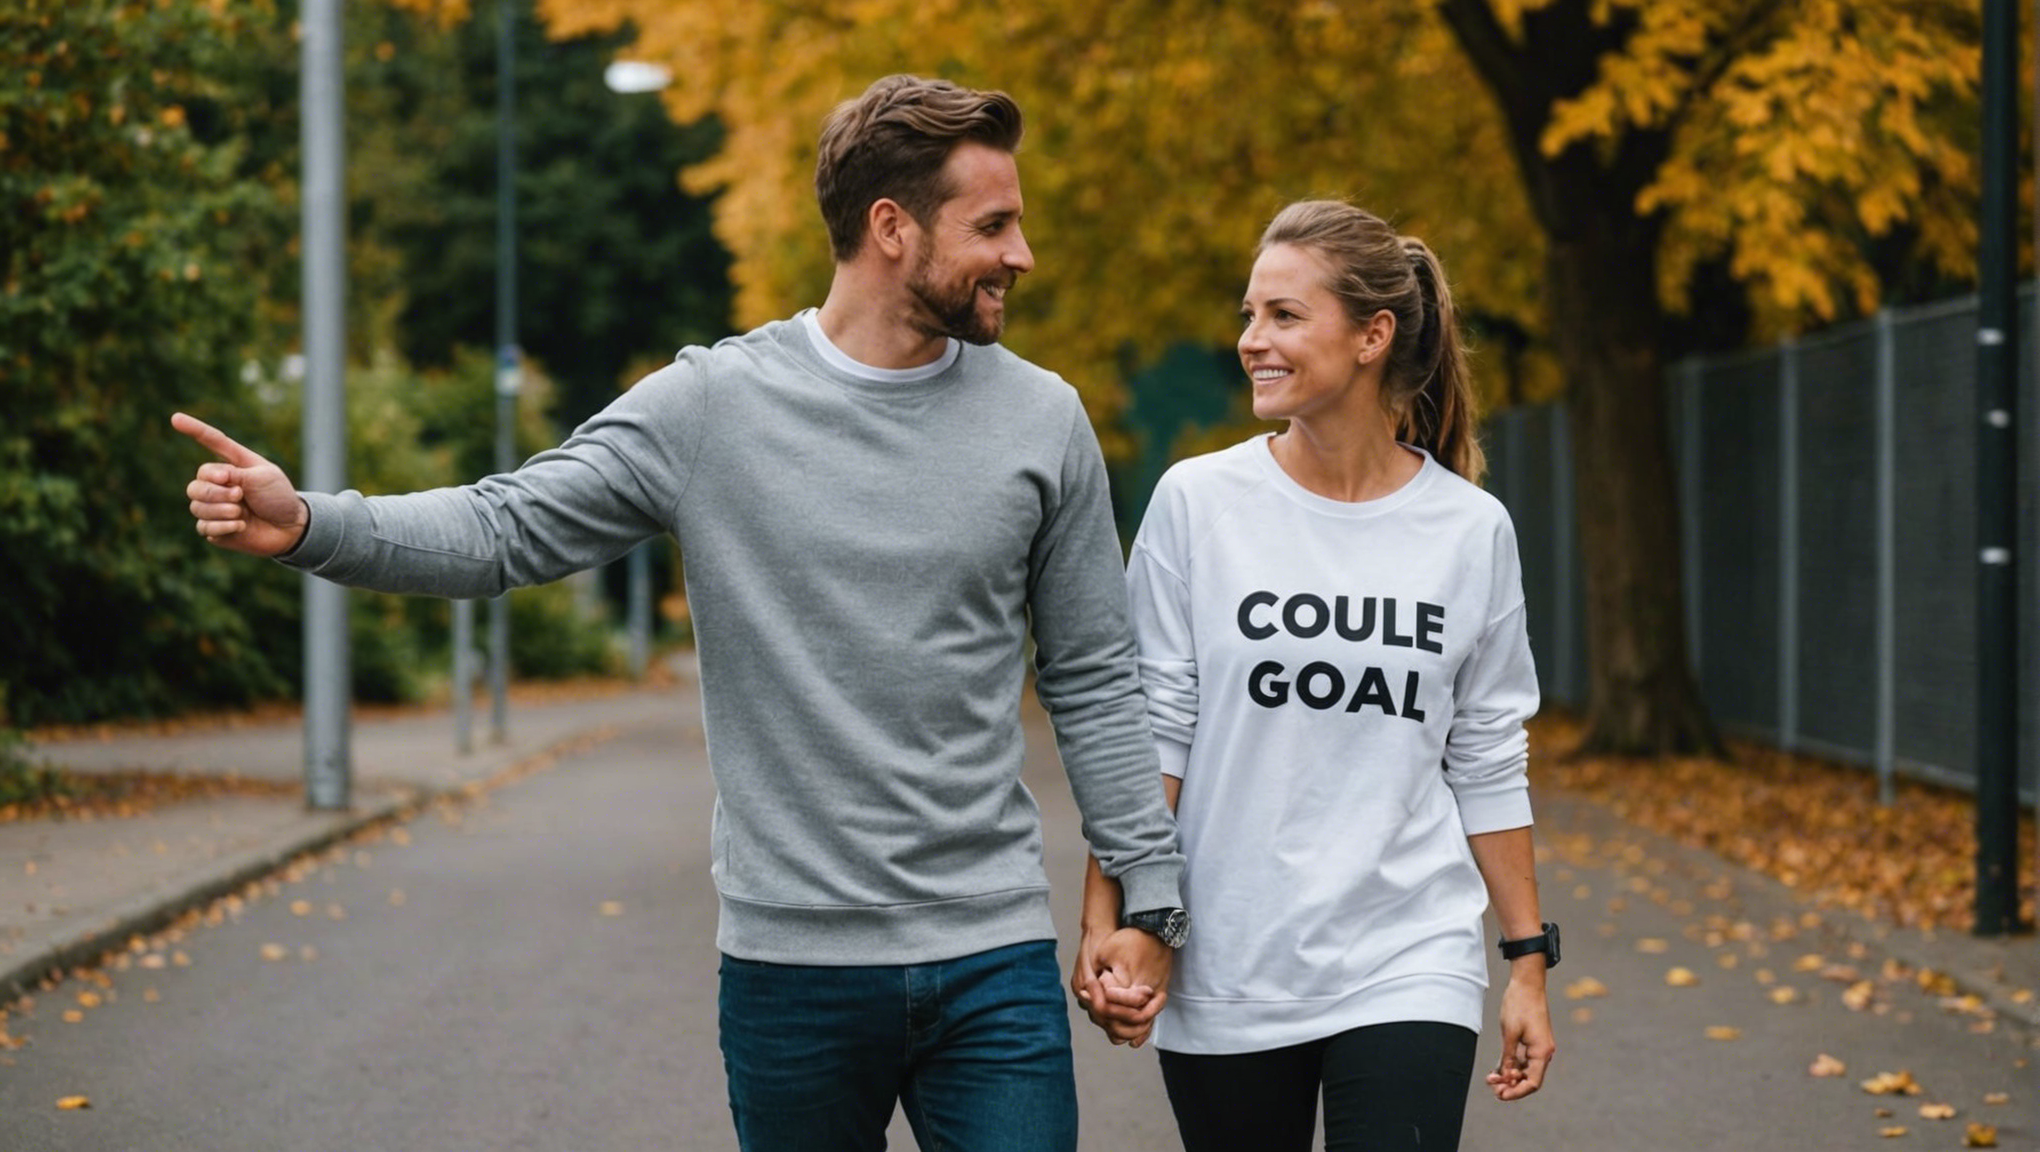 découvrez la signification authentique de 'couple goal' et explorez les clés d'une relation amoureuse épanouissante dans cet article captivant.